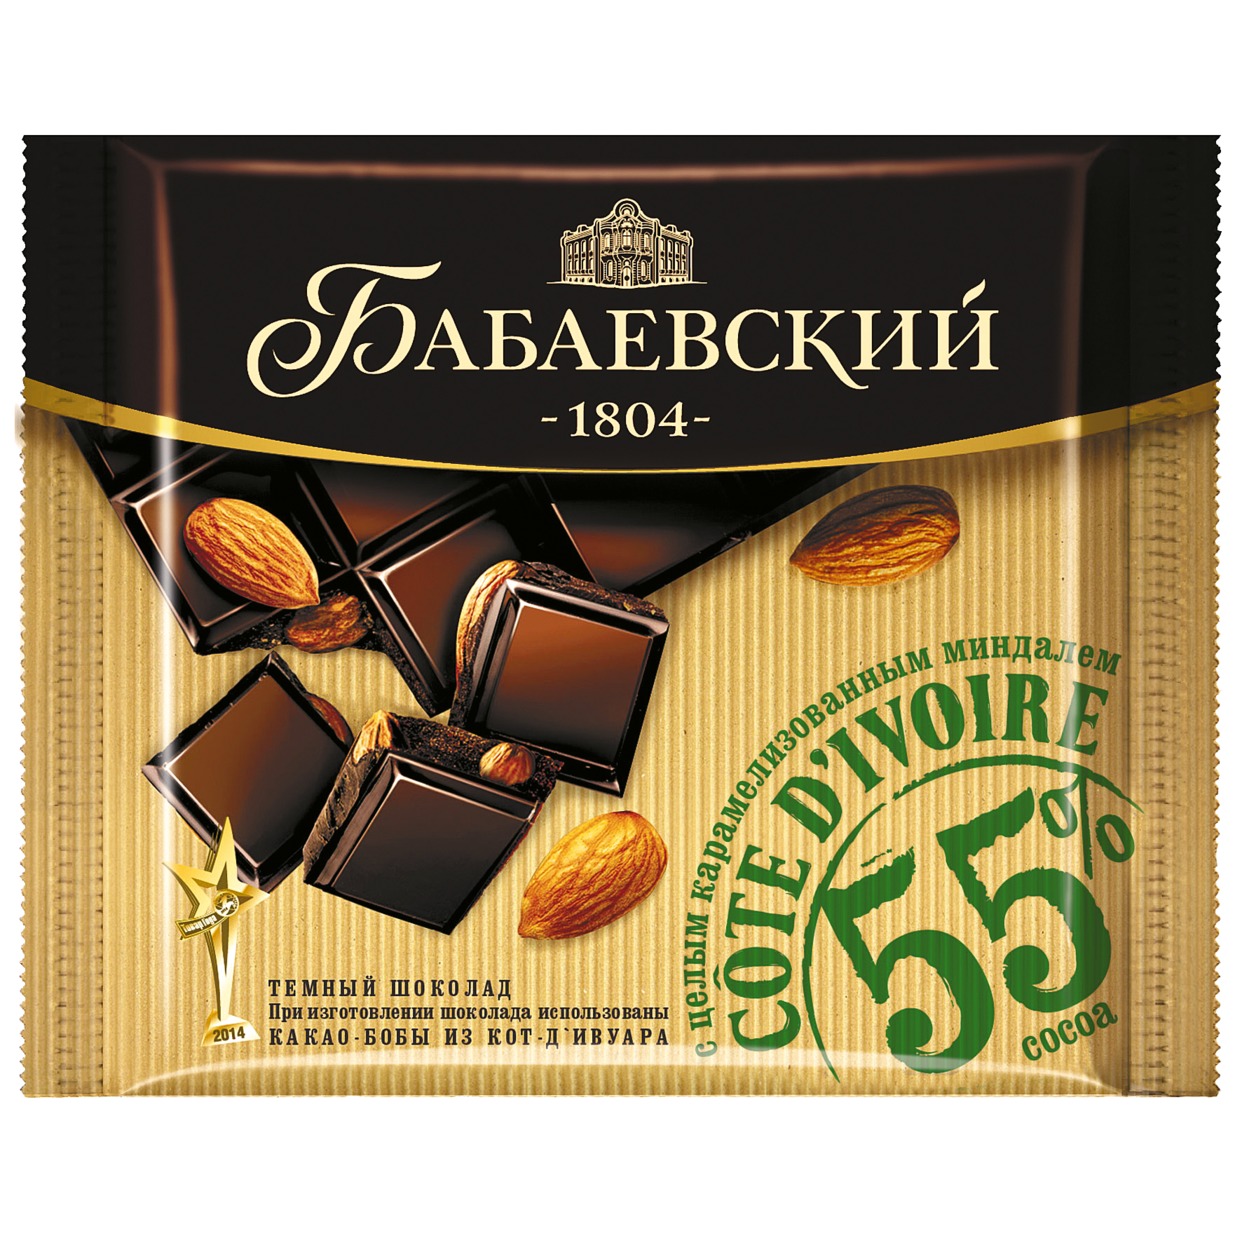 Шоколад Бабаевский, темный, с цельной карамелью и миндалем, 90 г по акции в Пятерочке